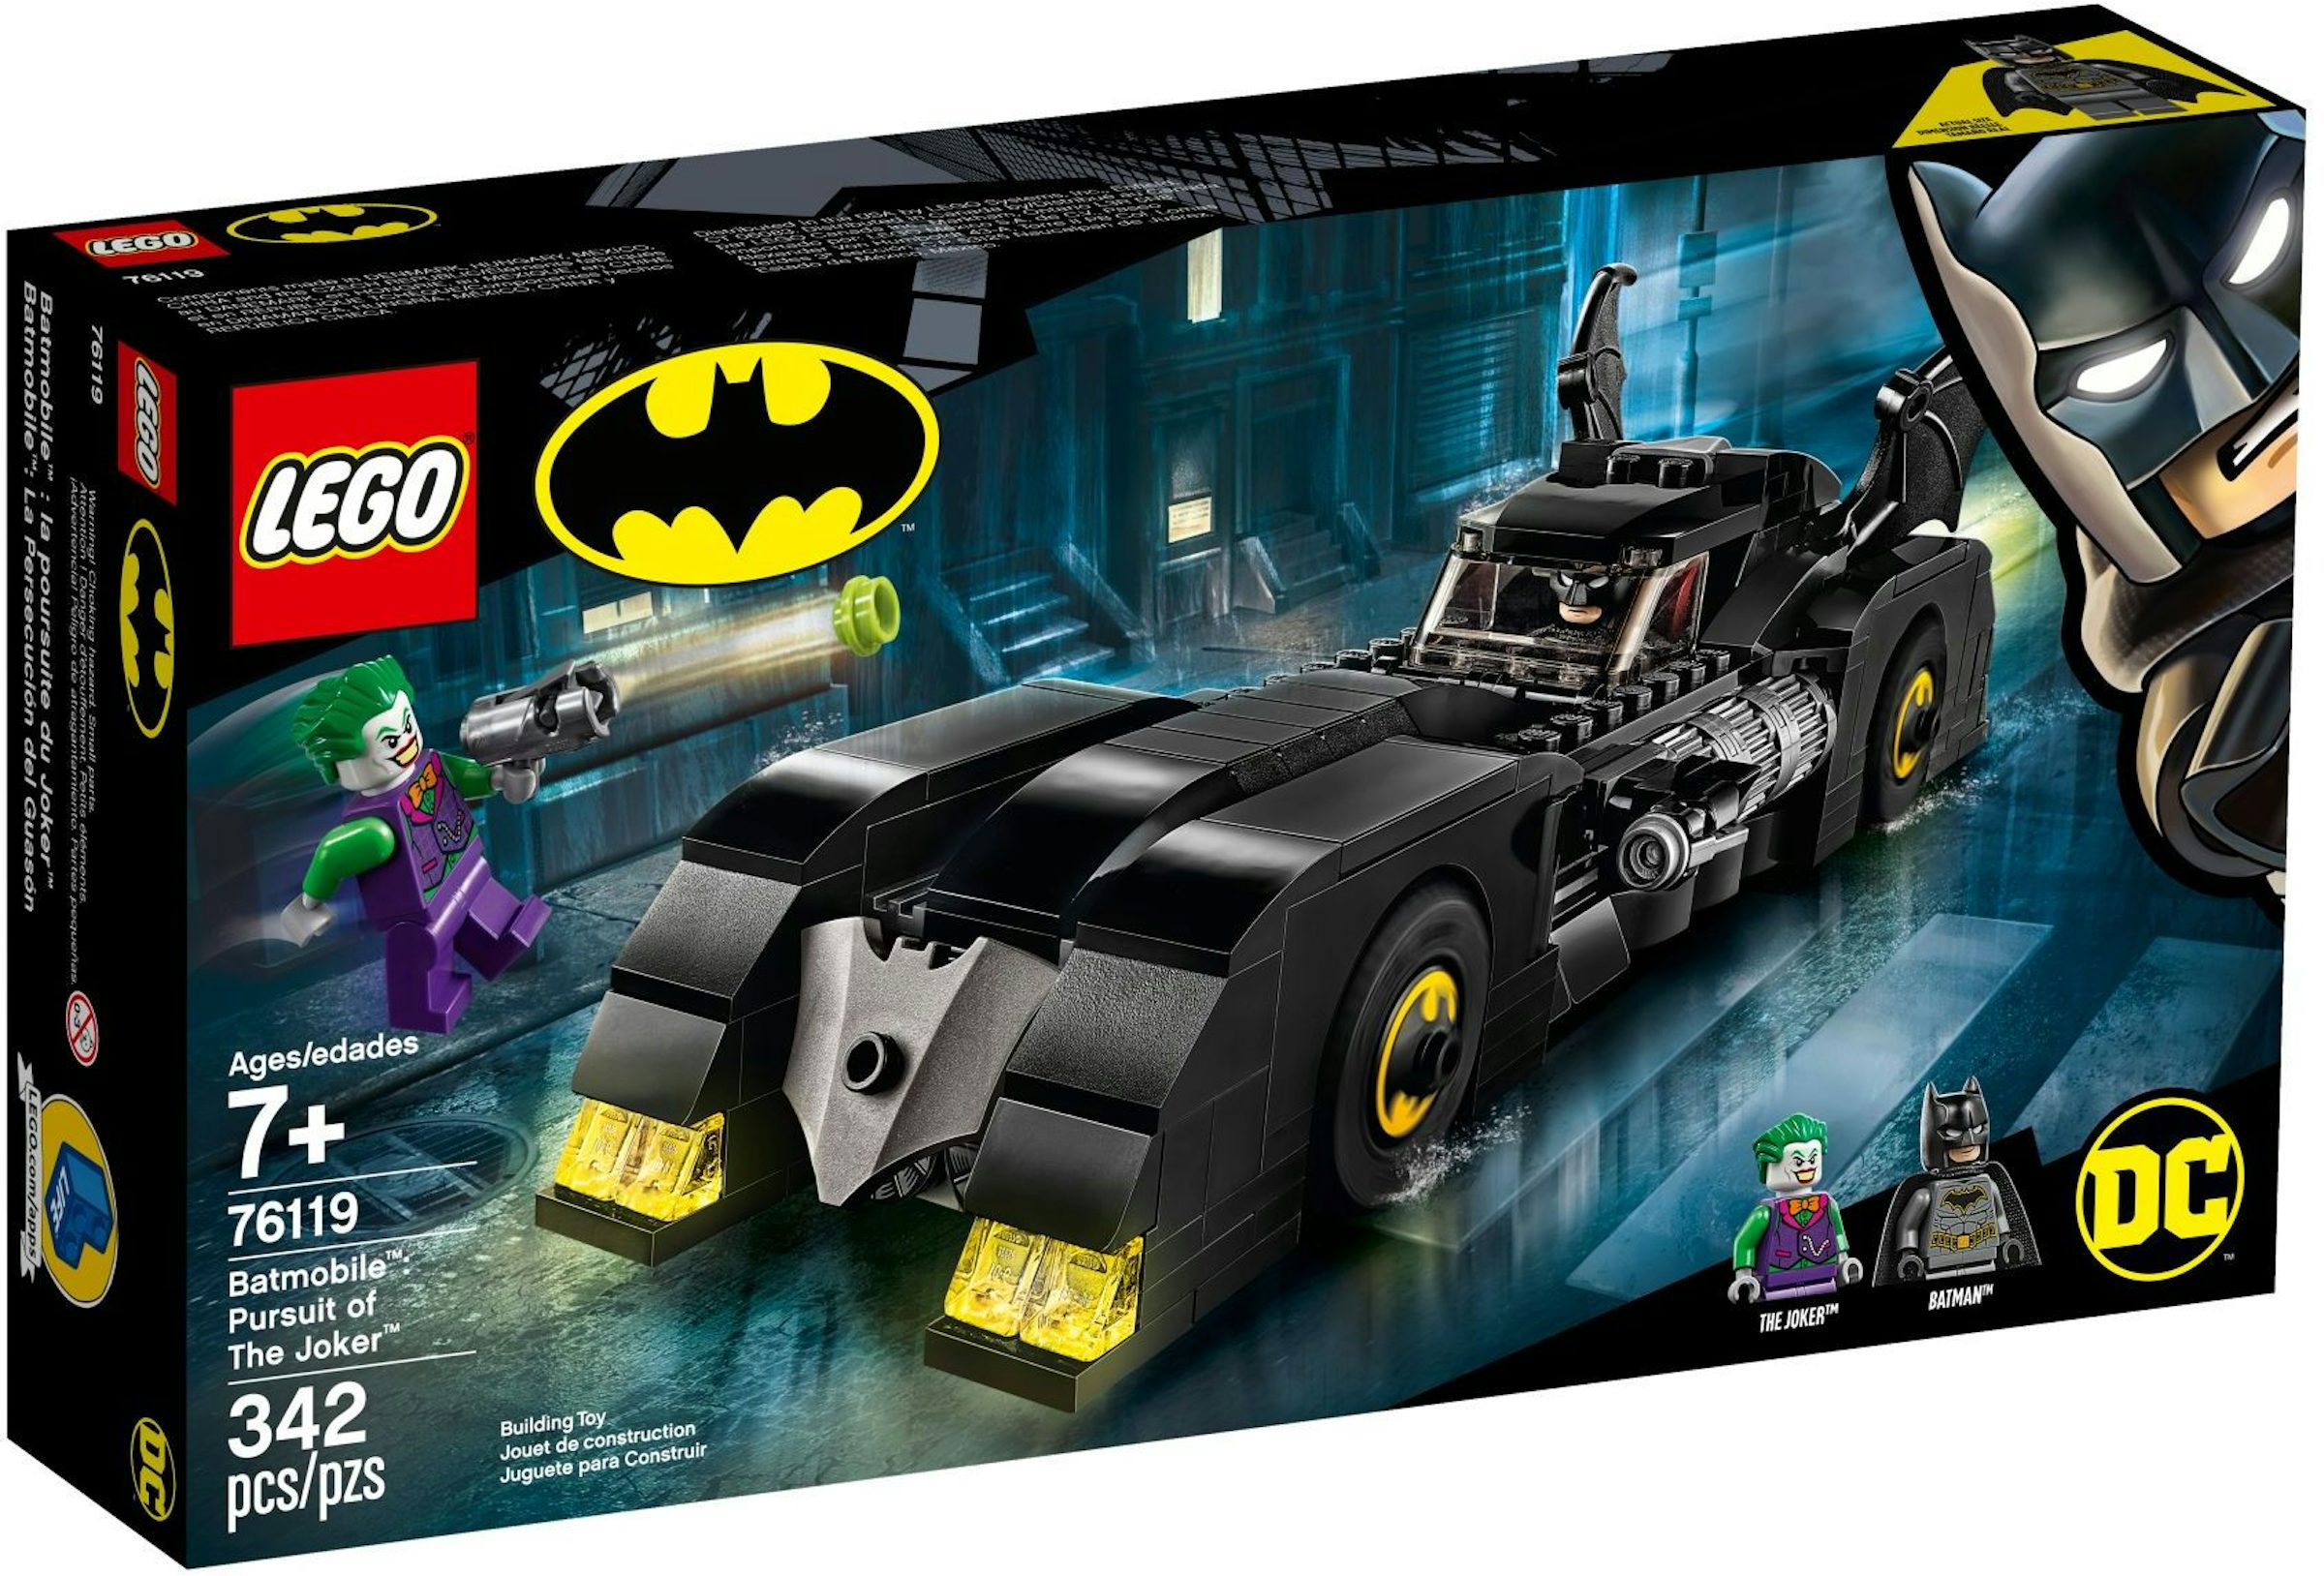 LEGO DC Batman Batmobile Pursuit of The Joker Set 76119 - US